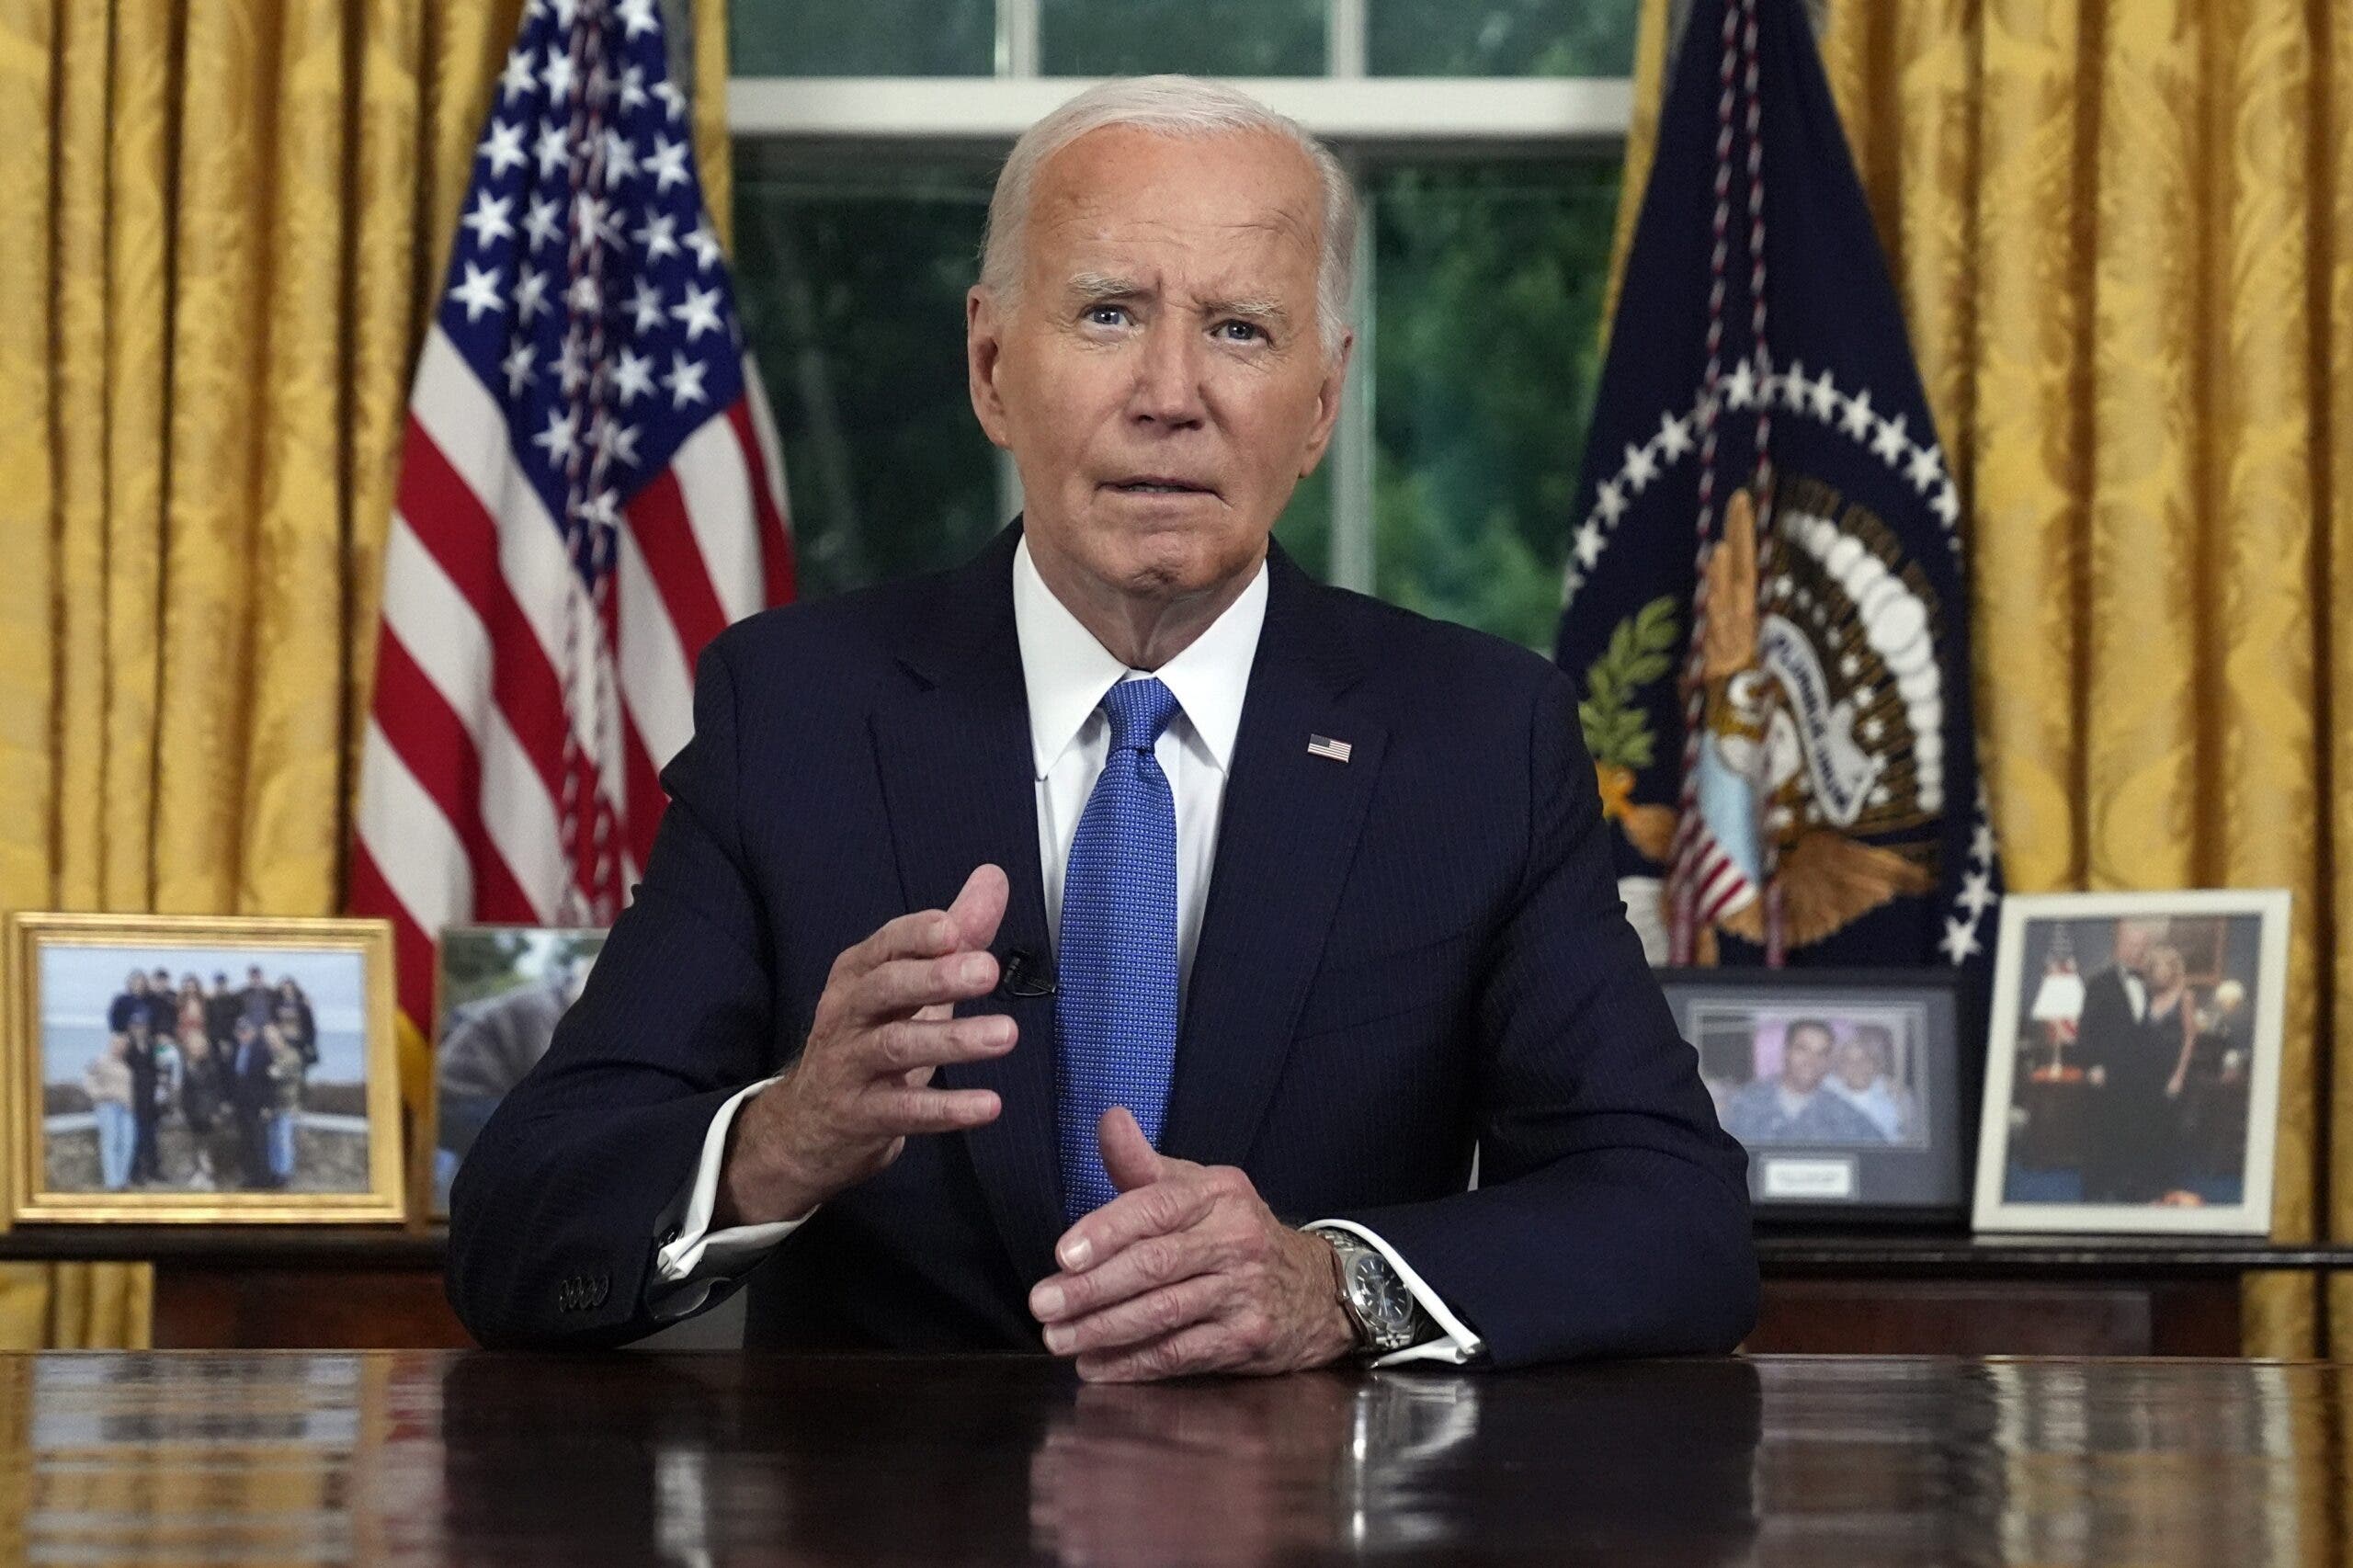 Biden dice que la “ambición personal” no podía anteponerse a “salvar” la democracia